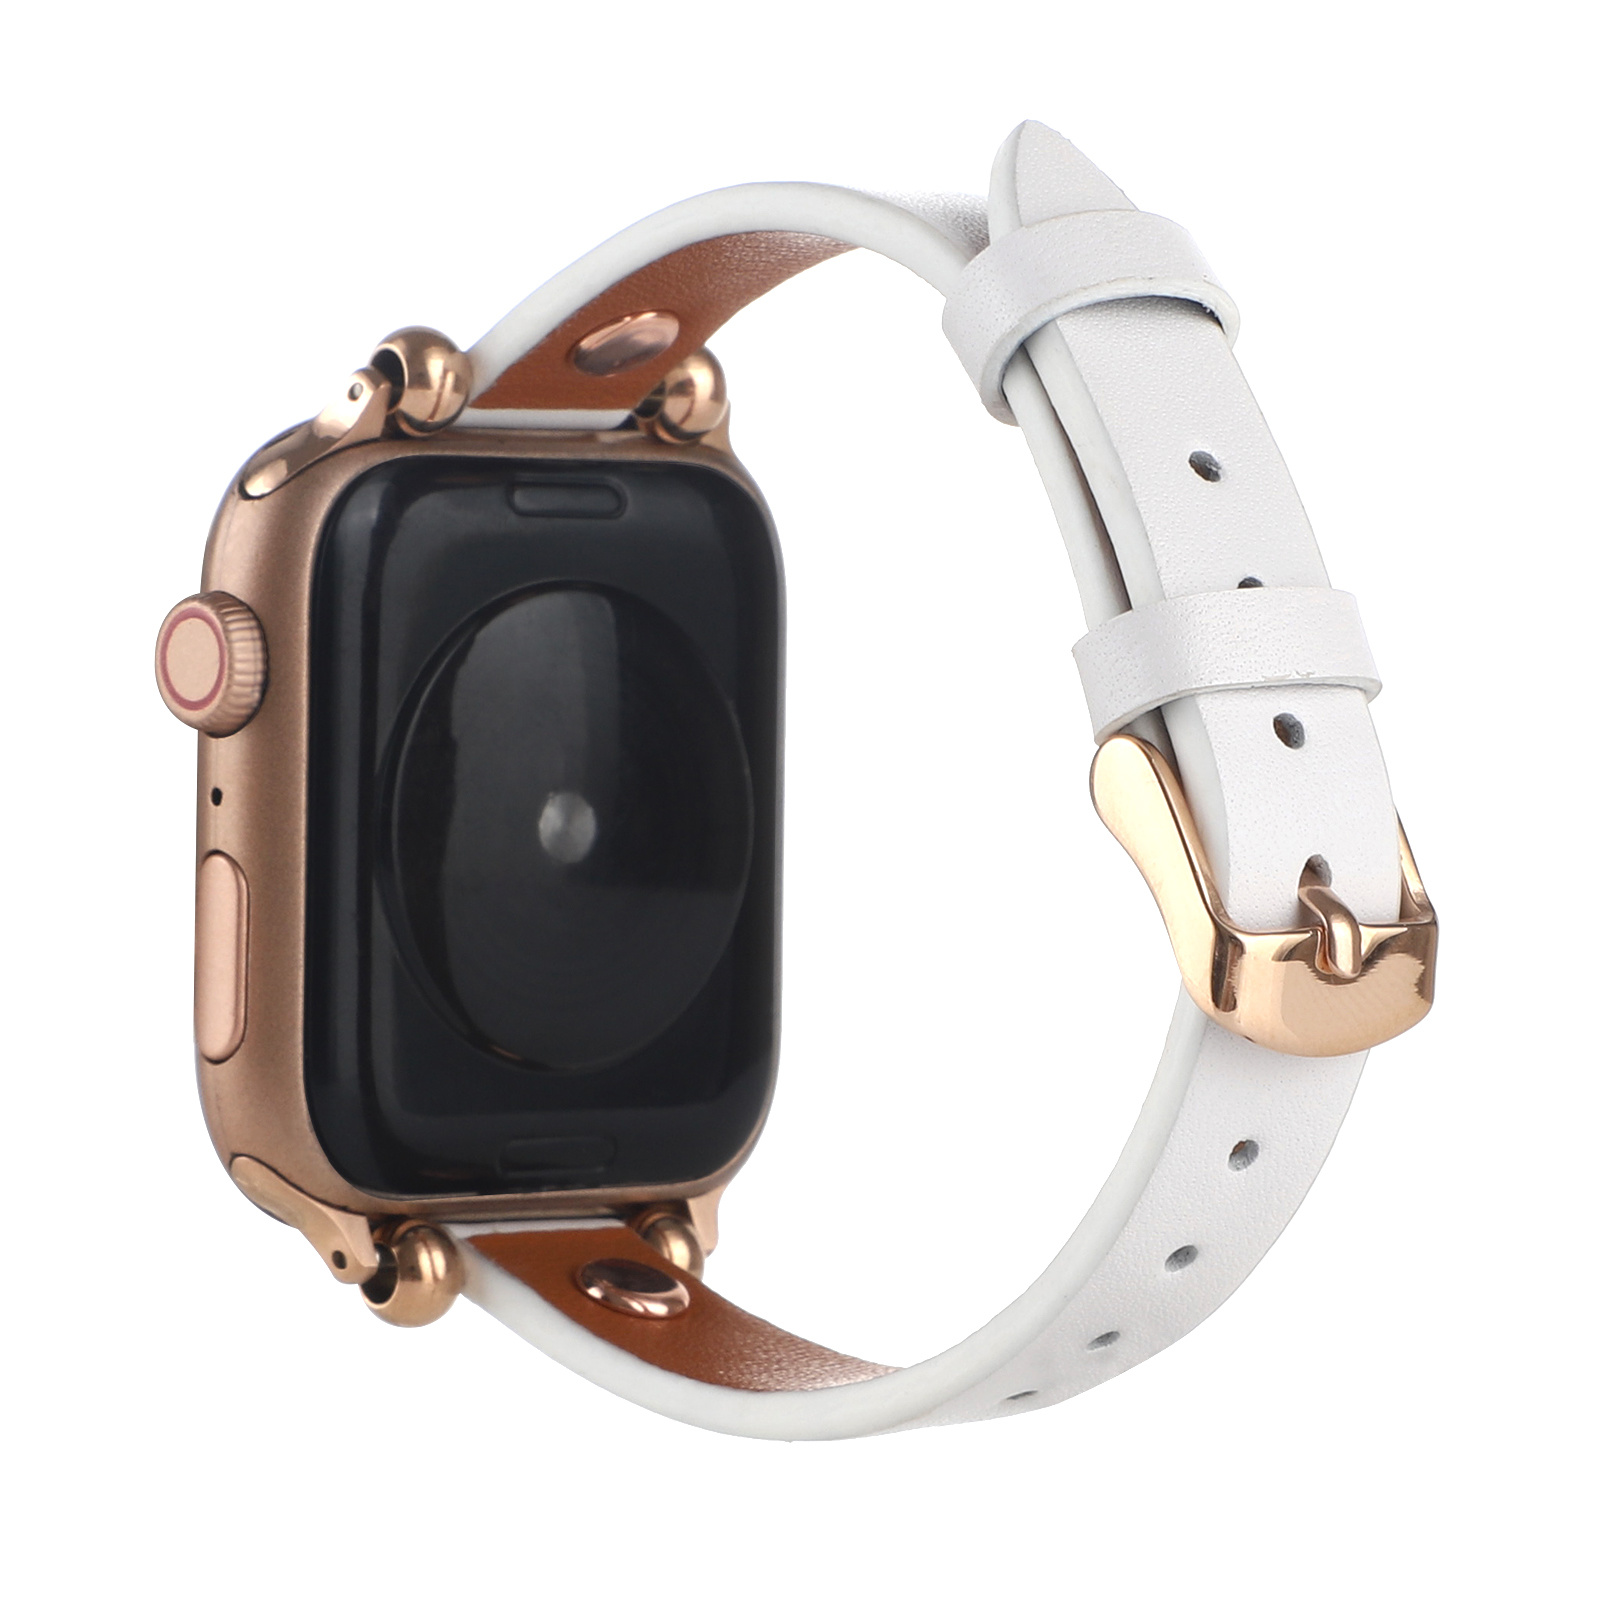 Correa inteligente de piel para el Apple Watch - blanca